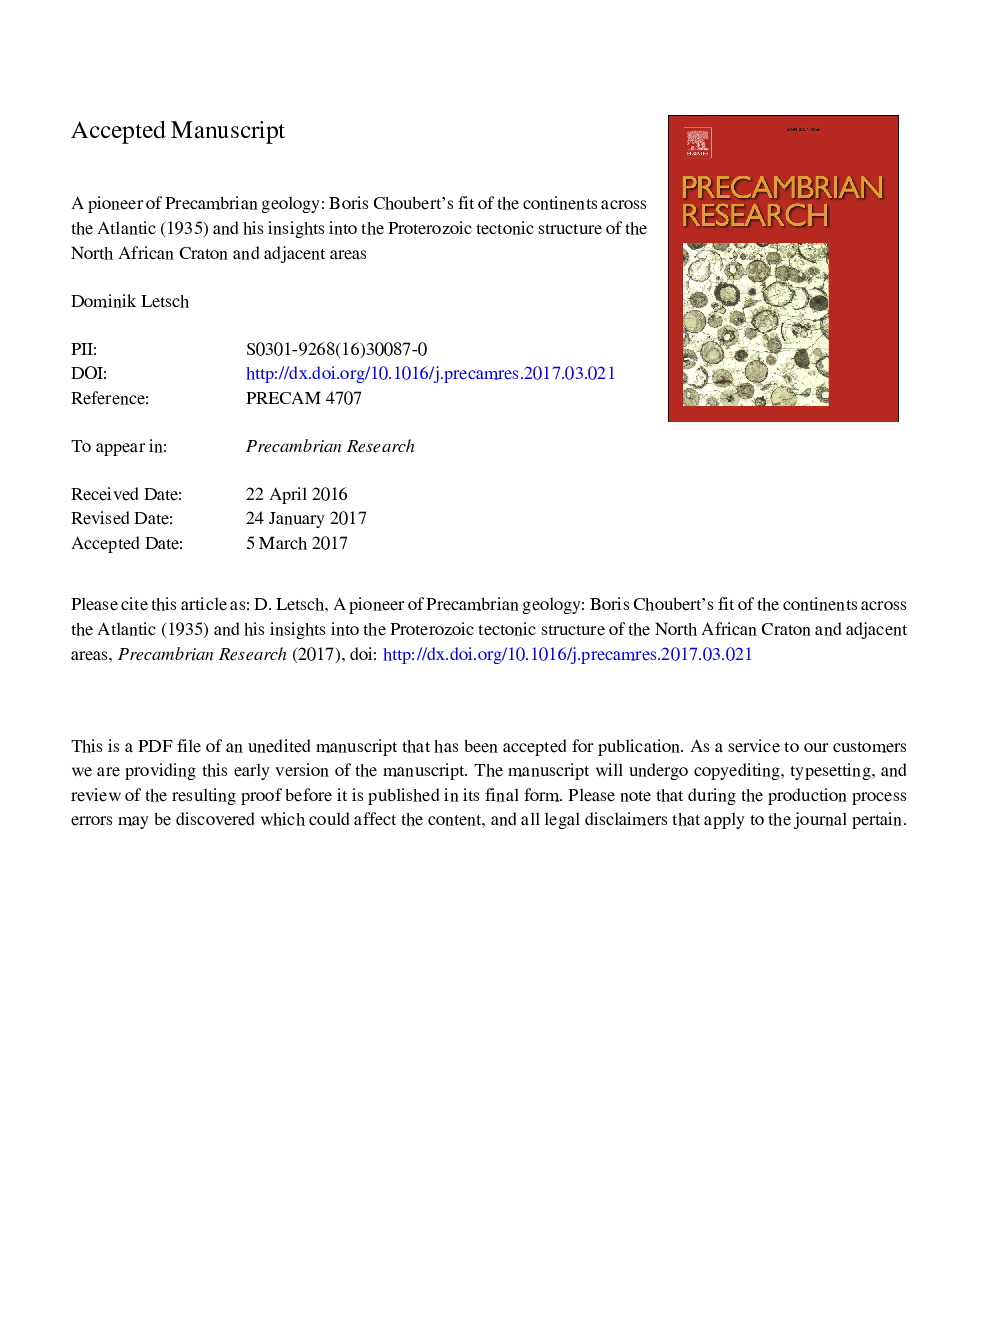 یکی از پیشگامان زمین شناسی پیشمبرین: مناسب بودن بوریس چوبرت از قاره ها در سراسر اقیانوس اطلس (1935) و دیدگاه هایش در ساختار تکتونیکی پروتروزیو کراون آفریقای غربی و مناطق مجاور